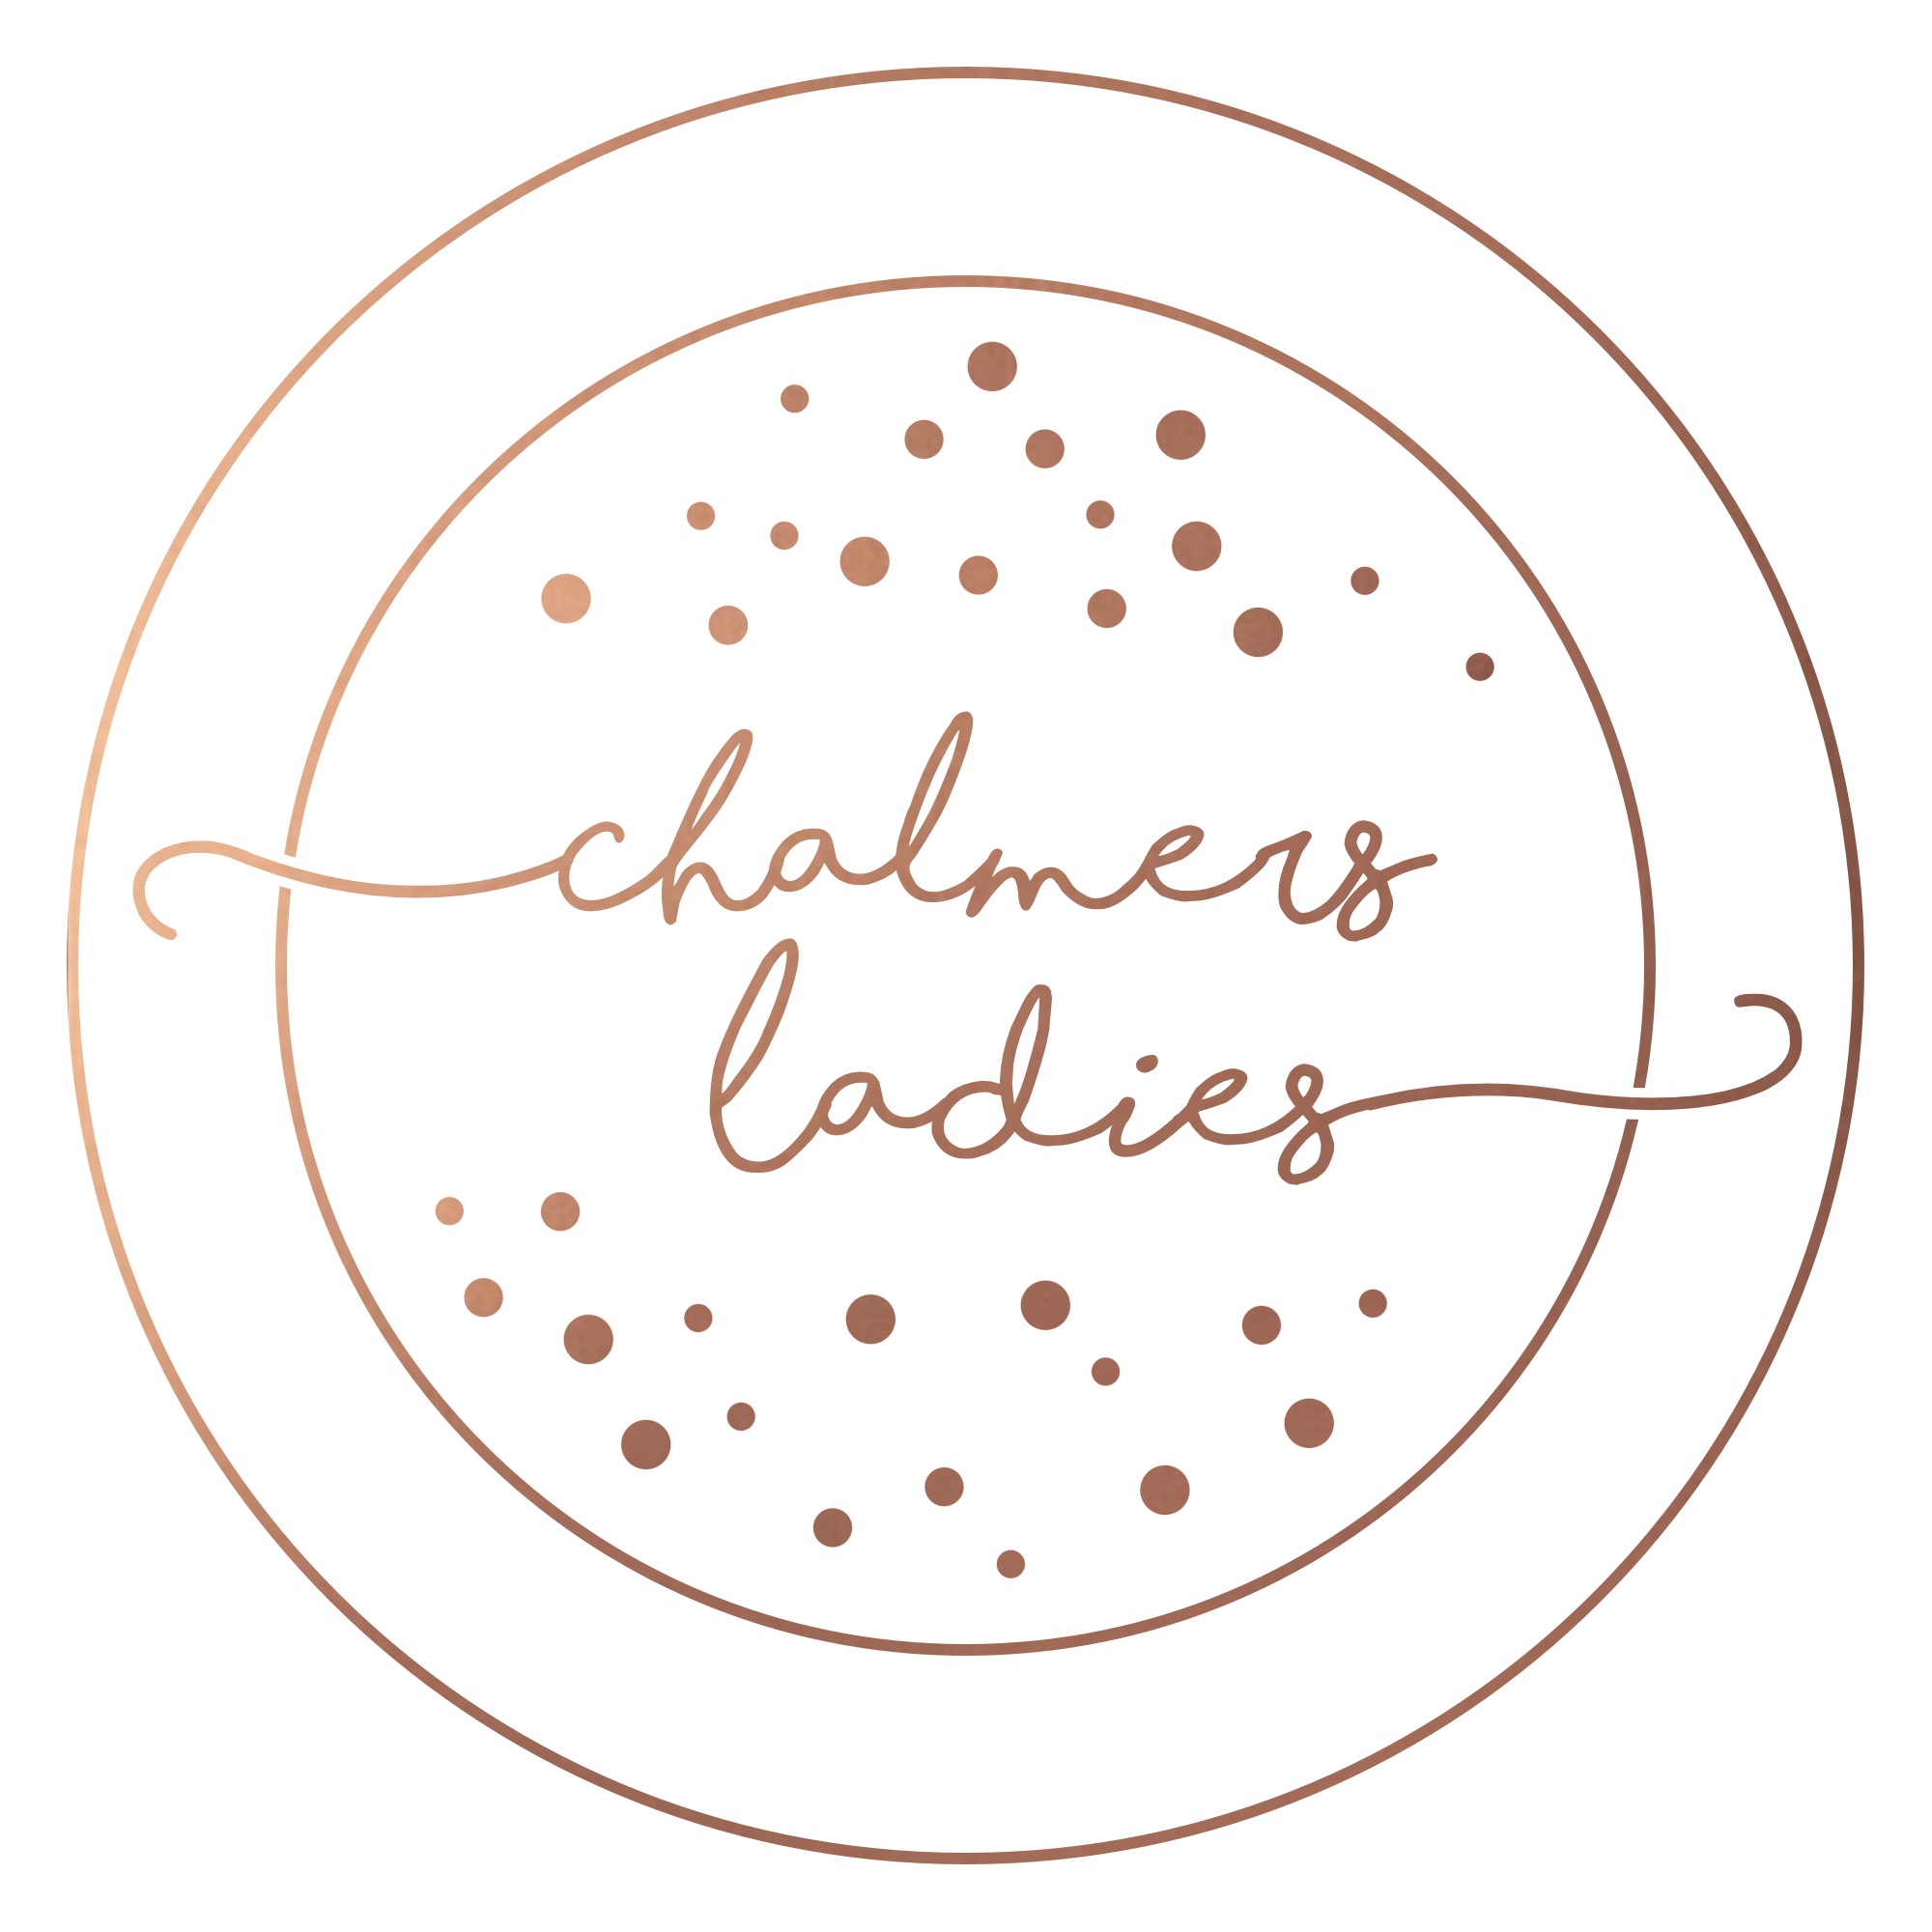 Chalmers Ladies - web